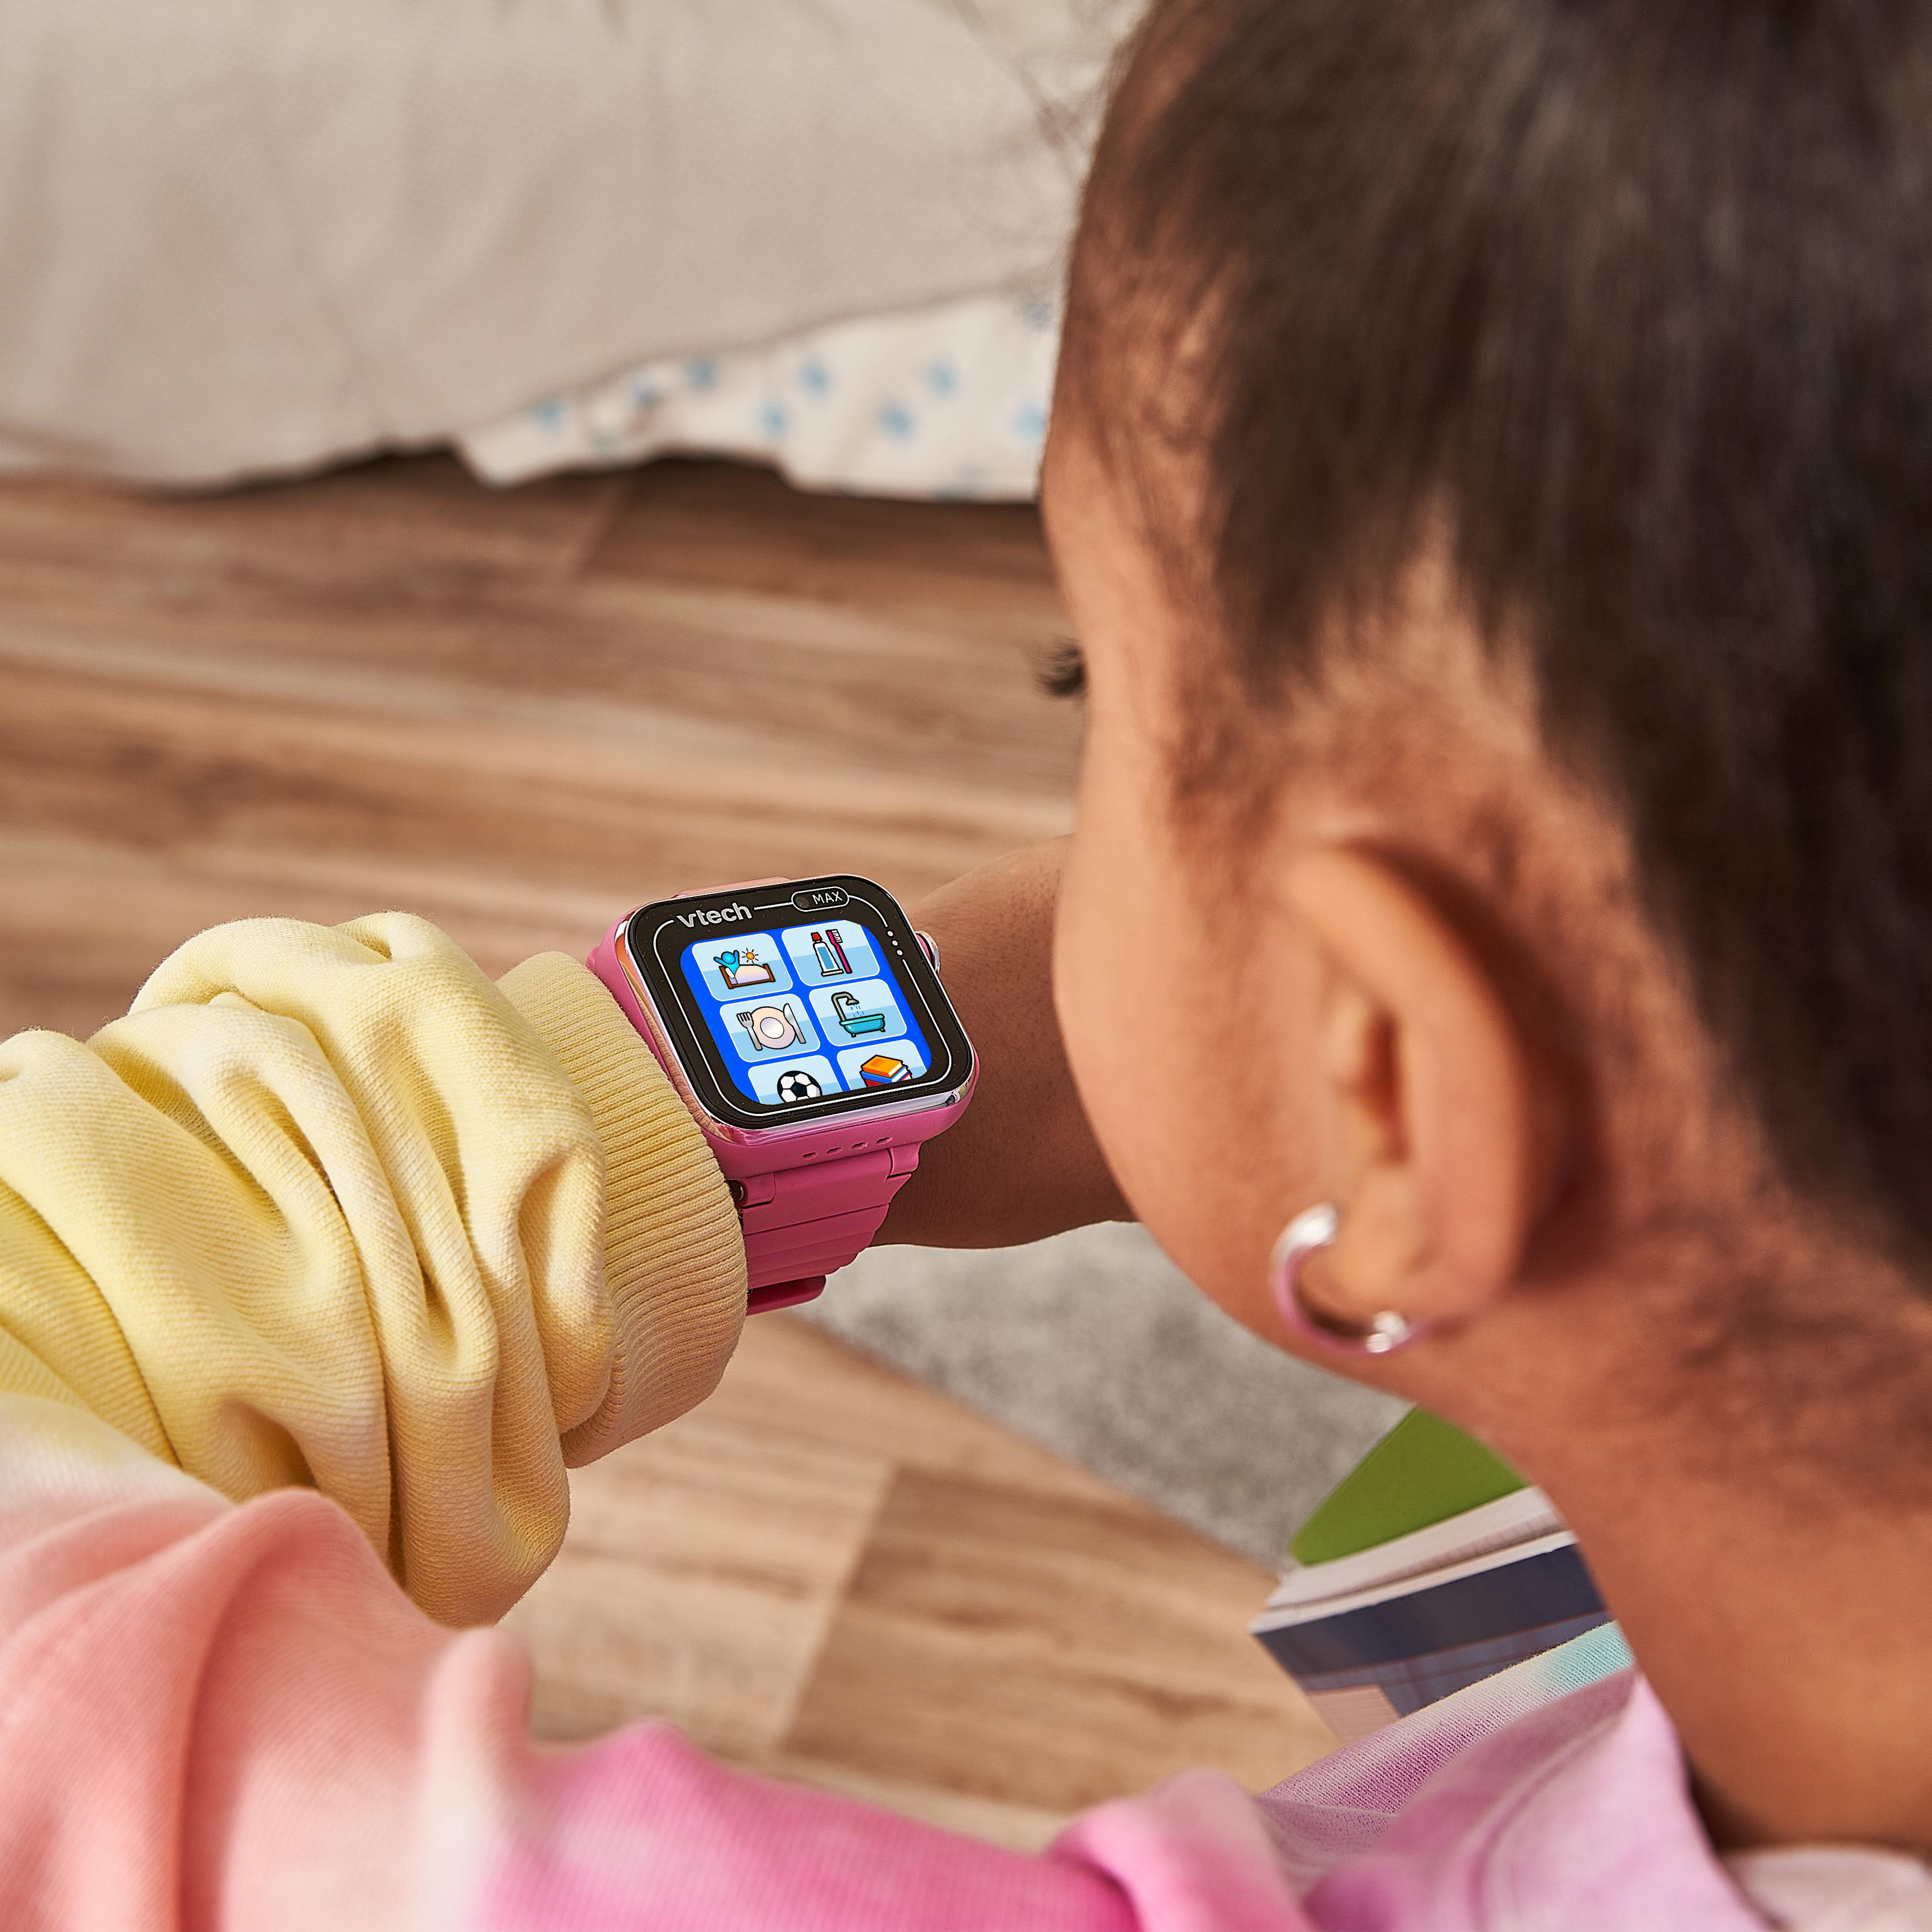 VTECH KidiZoom MAX pink Mehrfarbig Kinder-Smartwatch